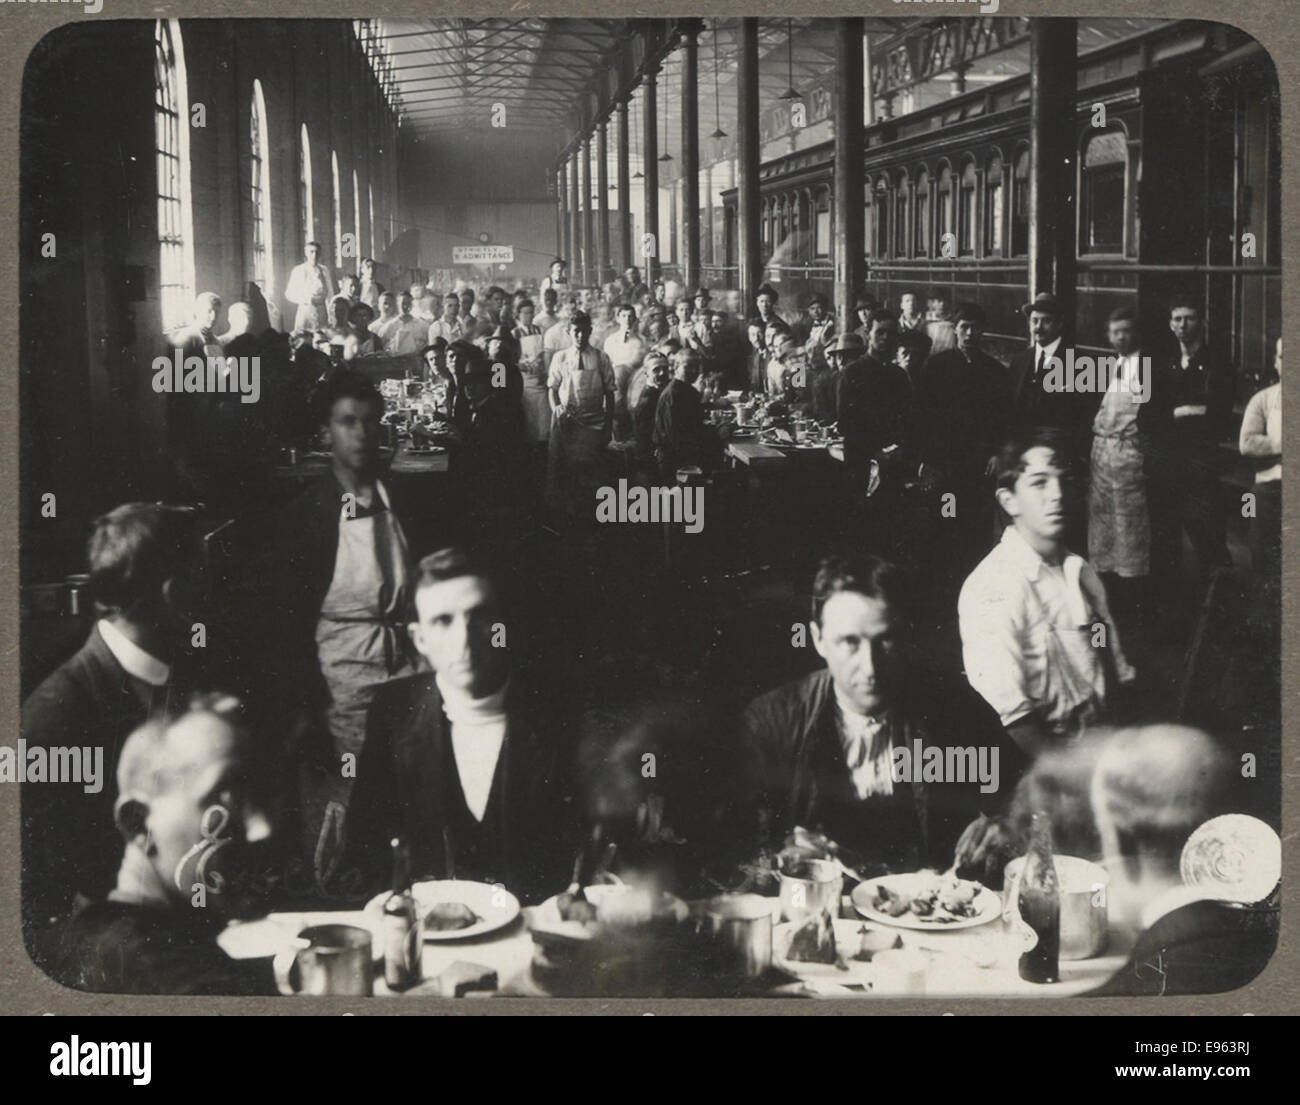 Album de photographies d'ateliers Eveleigh au cours de la grève des chemins de fer 1917 - Au dîner Banque D'Images